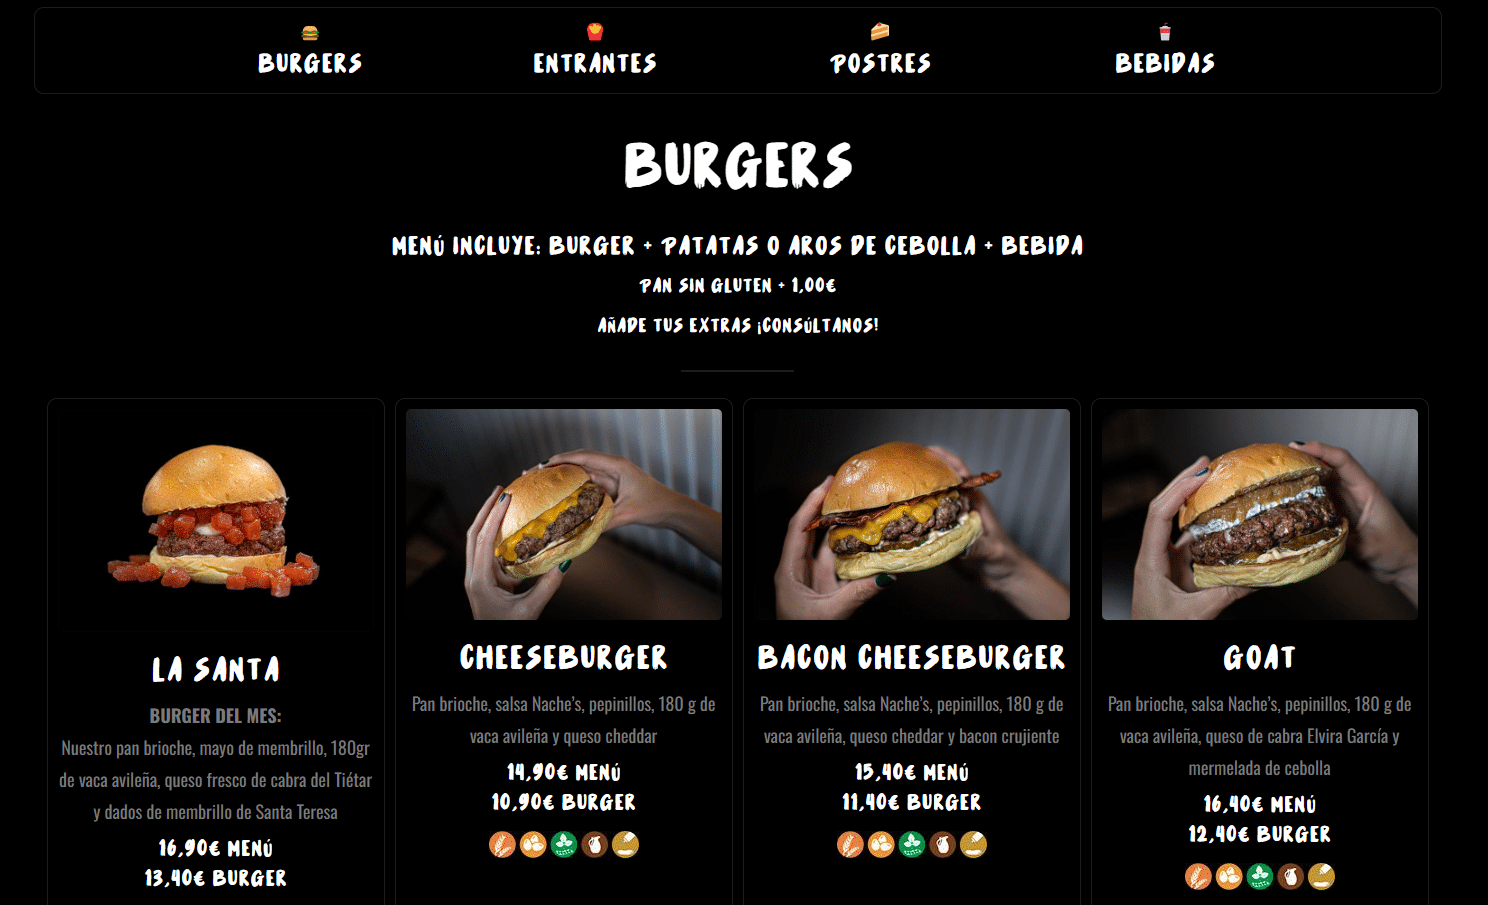 Nache's Burger Bar Ziddea | Estudio de diseño de páginas web en Ávila